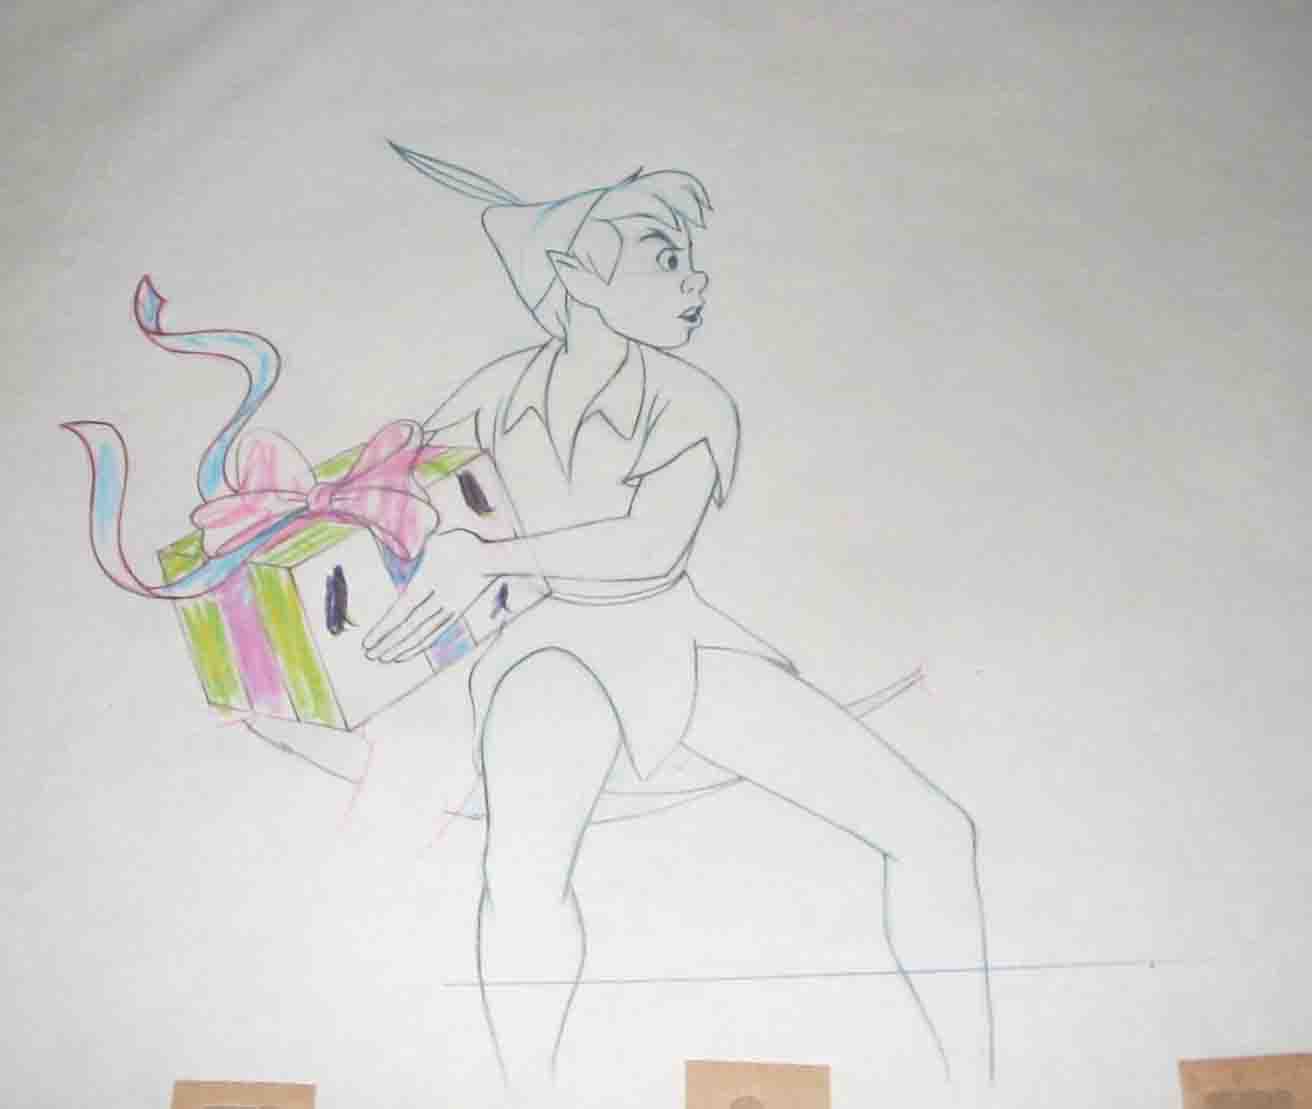 Original Walt Disney Production Drawing from Peter Pan featuring Peter Pan